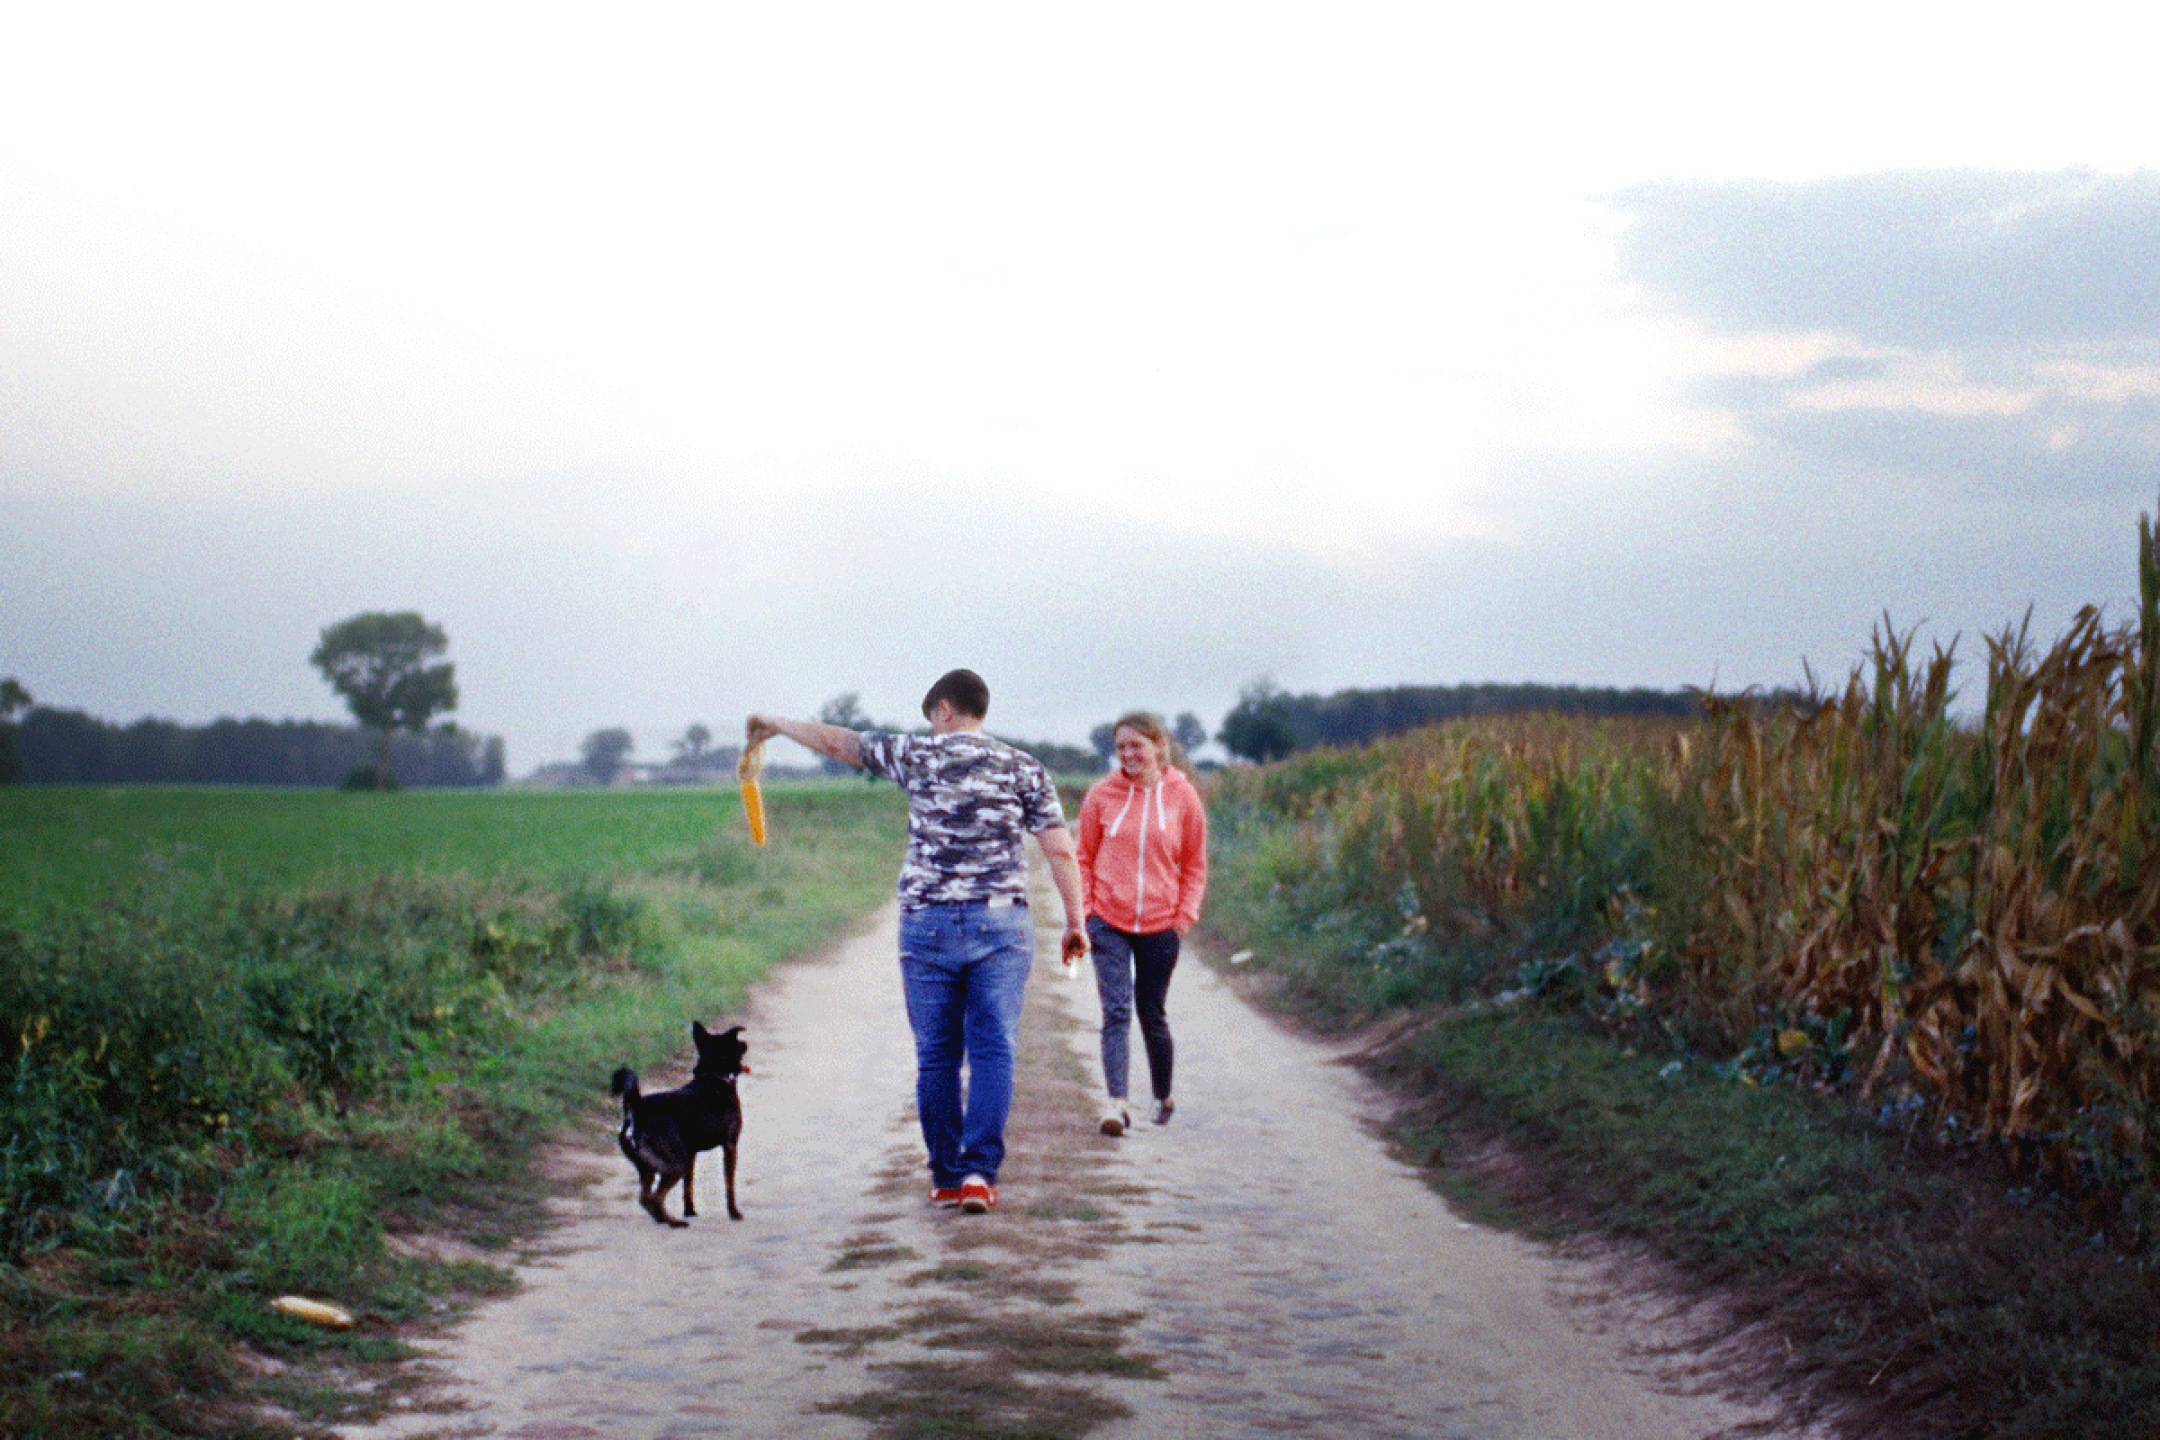 Auf einem Sandweg zwischen einer grünen Wiese und einem Maisfeld gehen zwei Frauen mit einem Hund spazieren. Eine der Frauen hält einen Maiskolben hoch, der Hund setzt zu einem Sprung danach an.